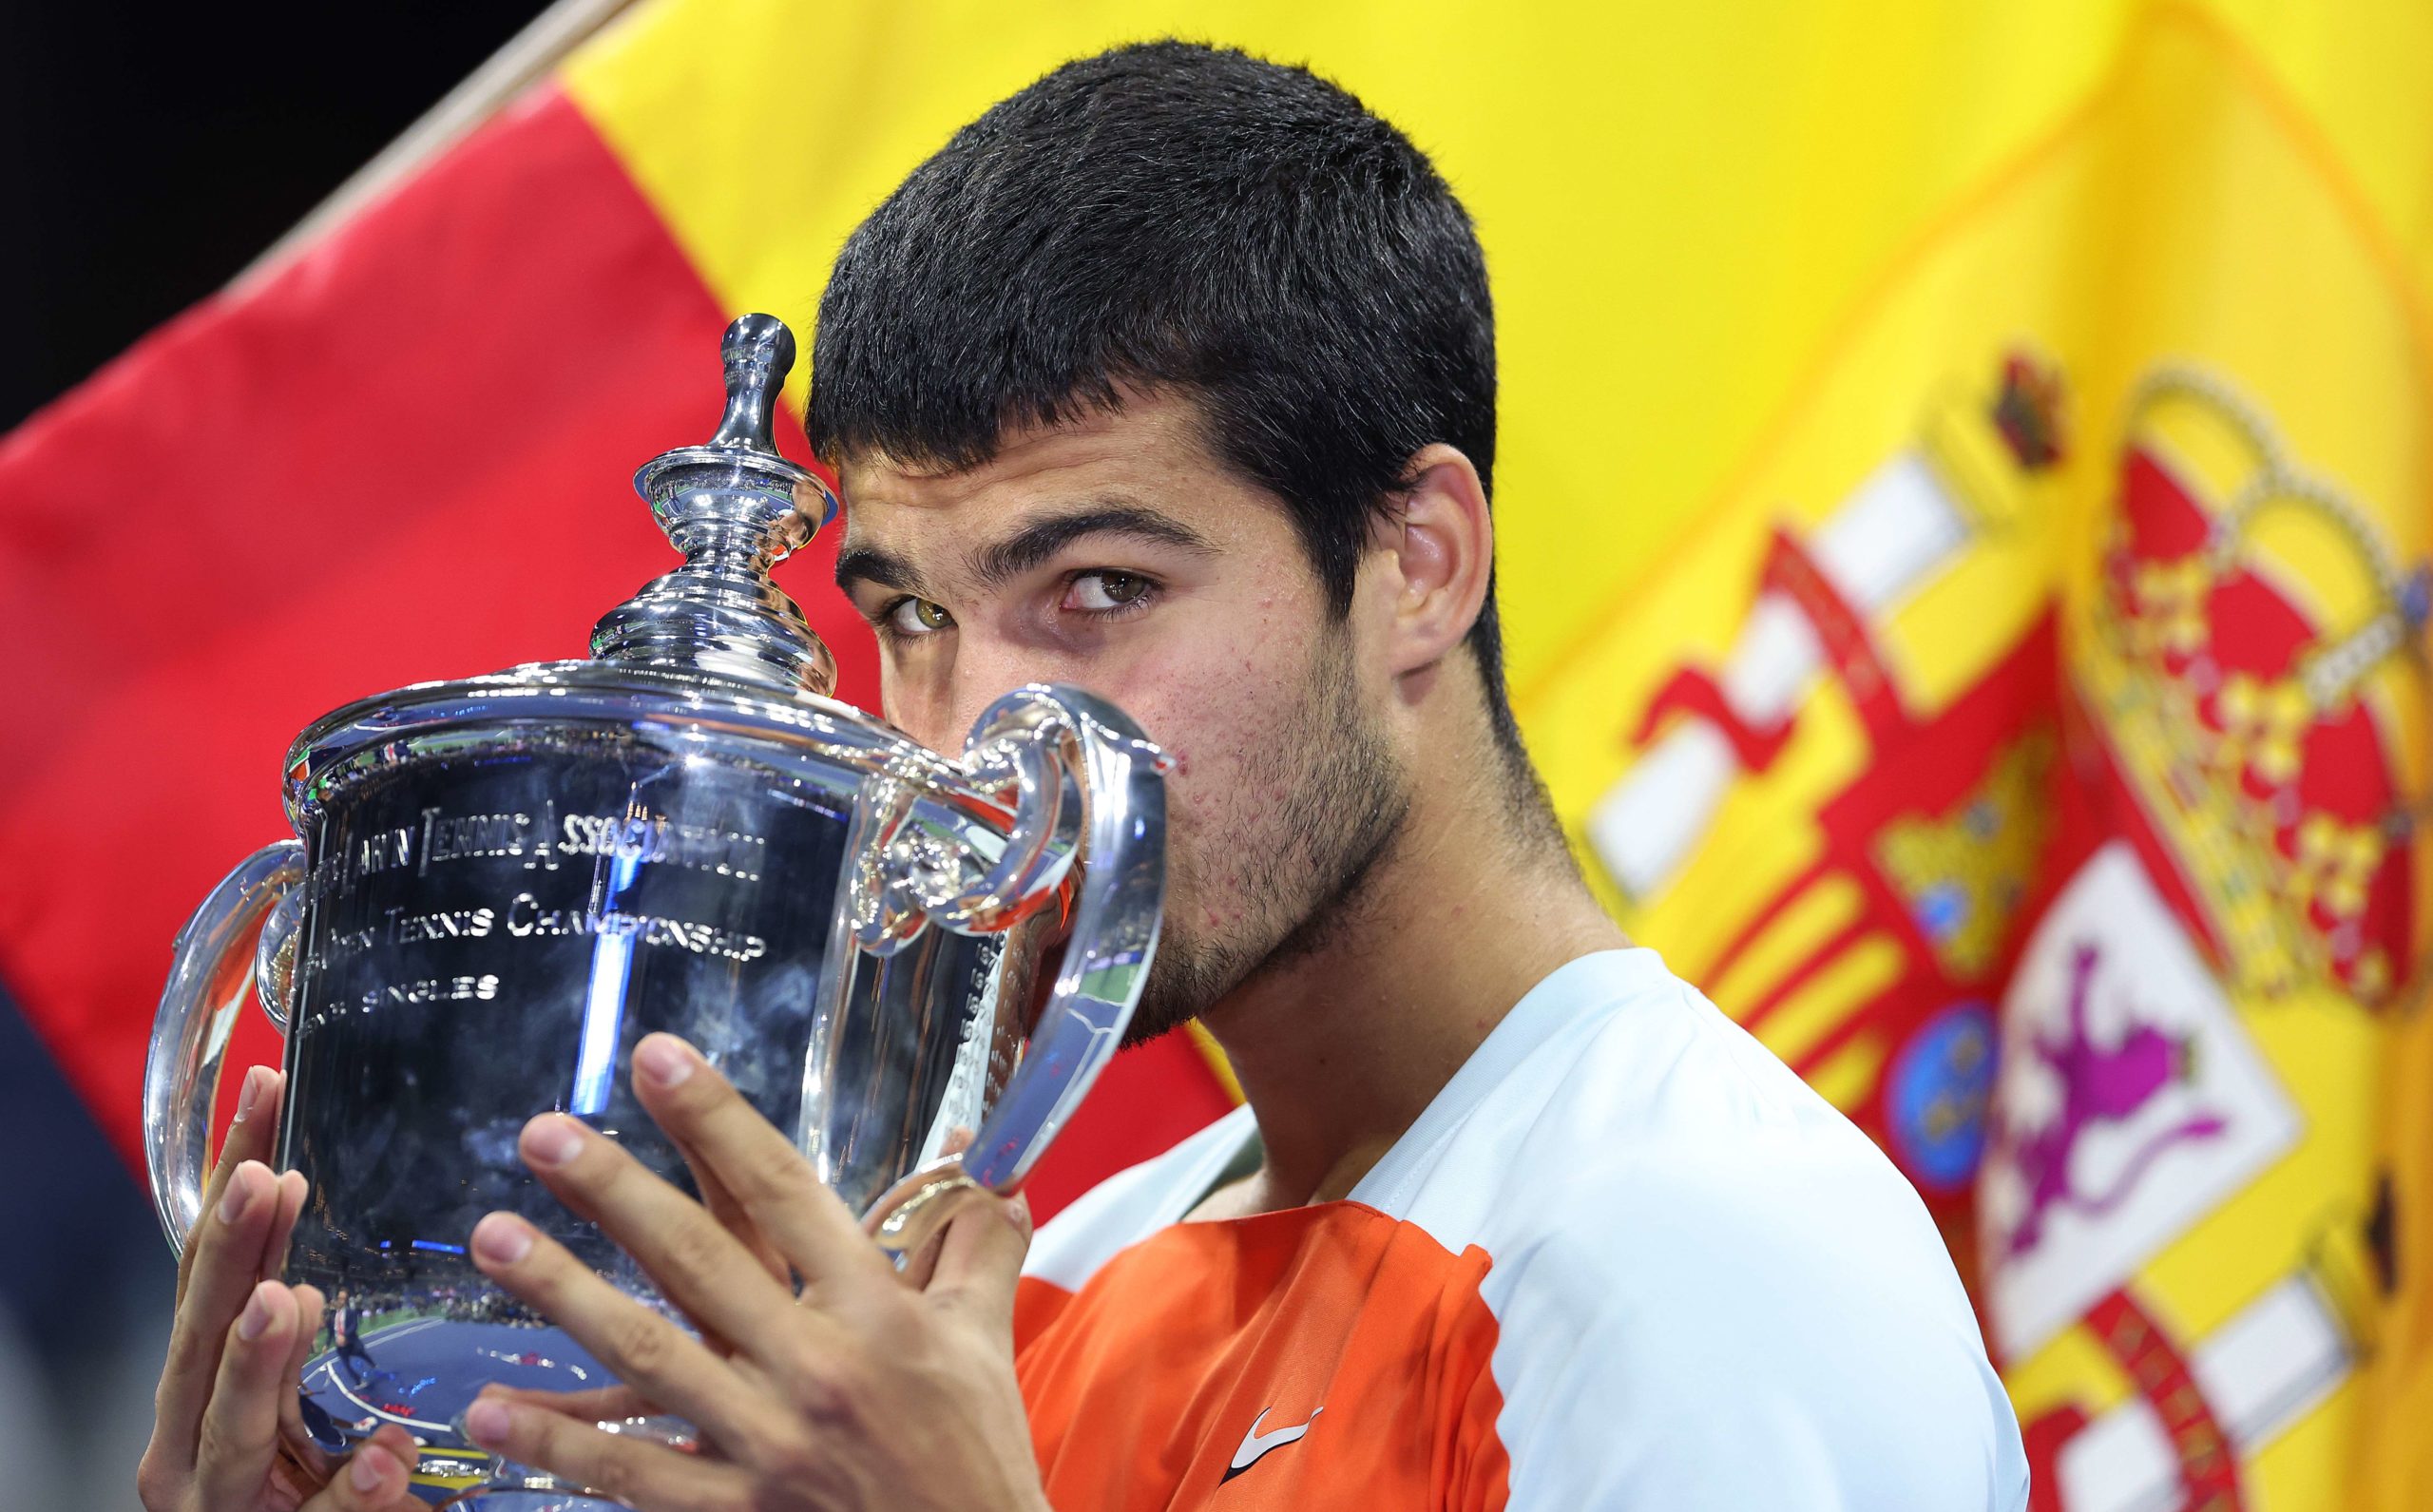 Qui est Carlos Alcaraz, vainqueur de l'US Open et plus jeune n°1 mondial de l'histoire?